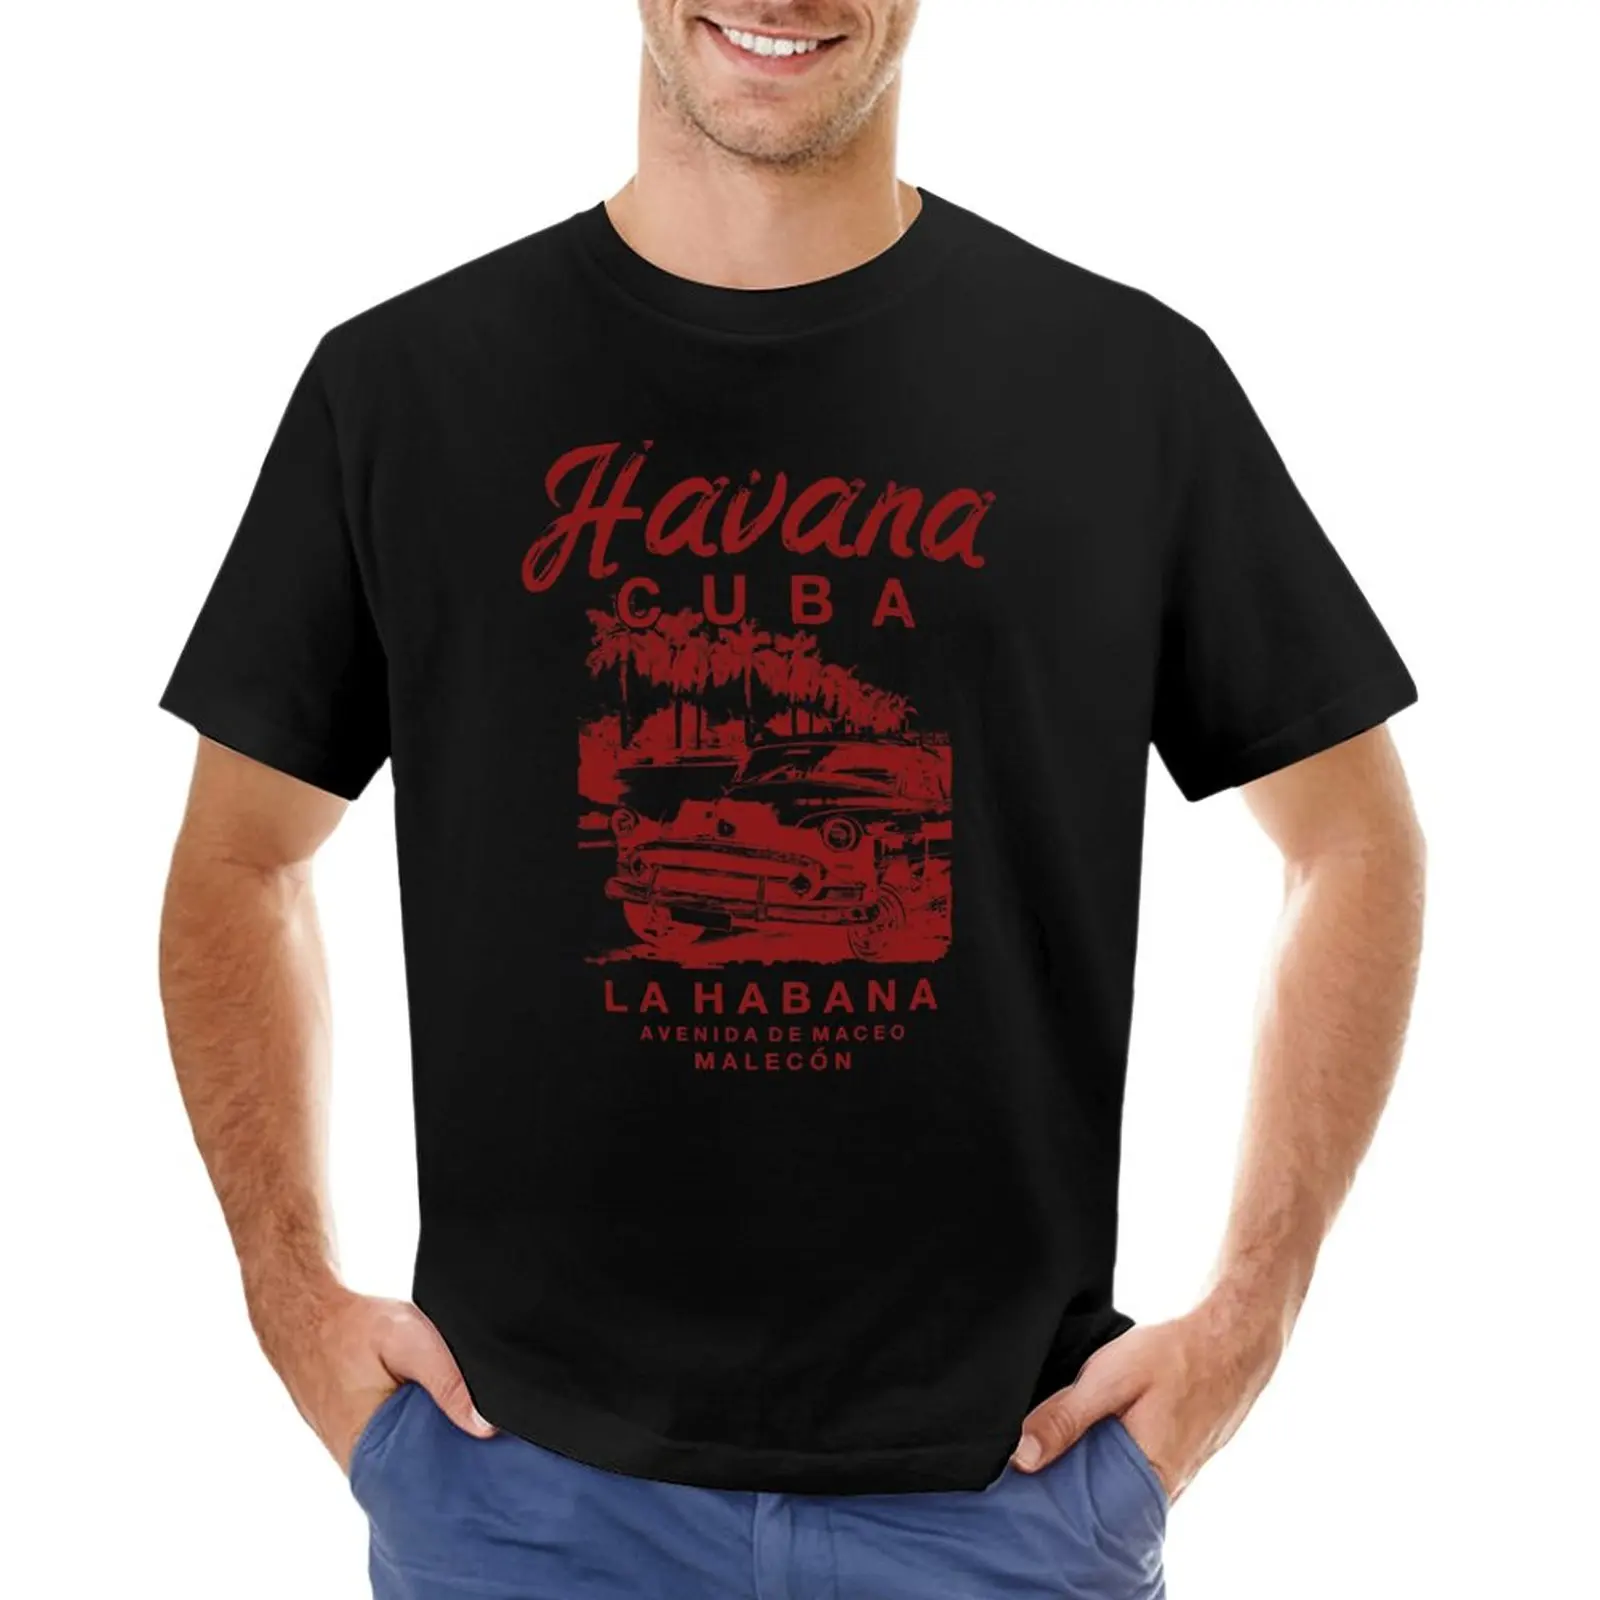 

Cuba Havana Cuban La Habana Vintage Car T-Shirt vintage clothes sweat shirts, men